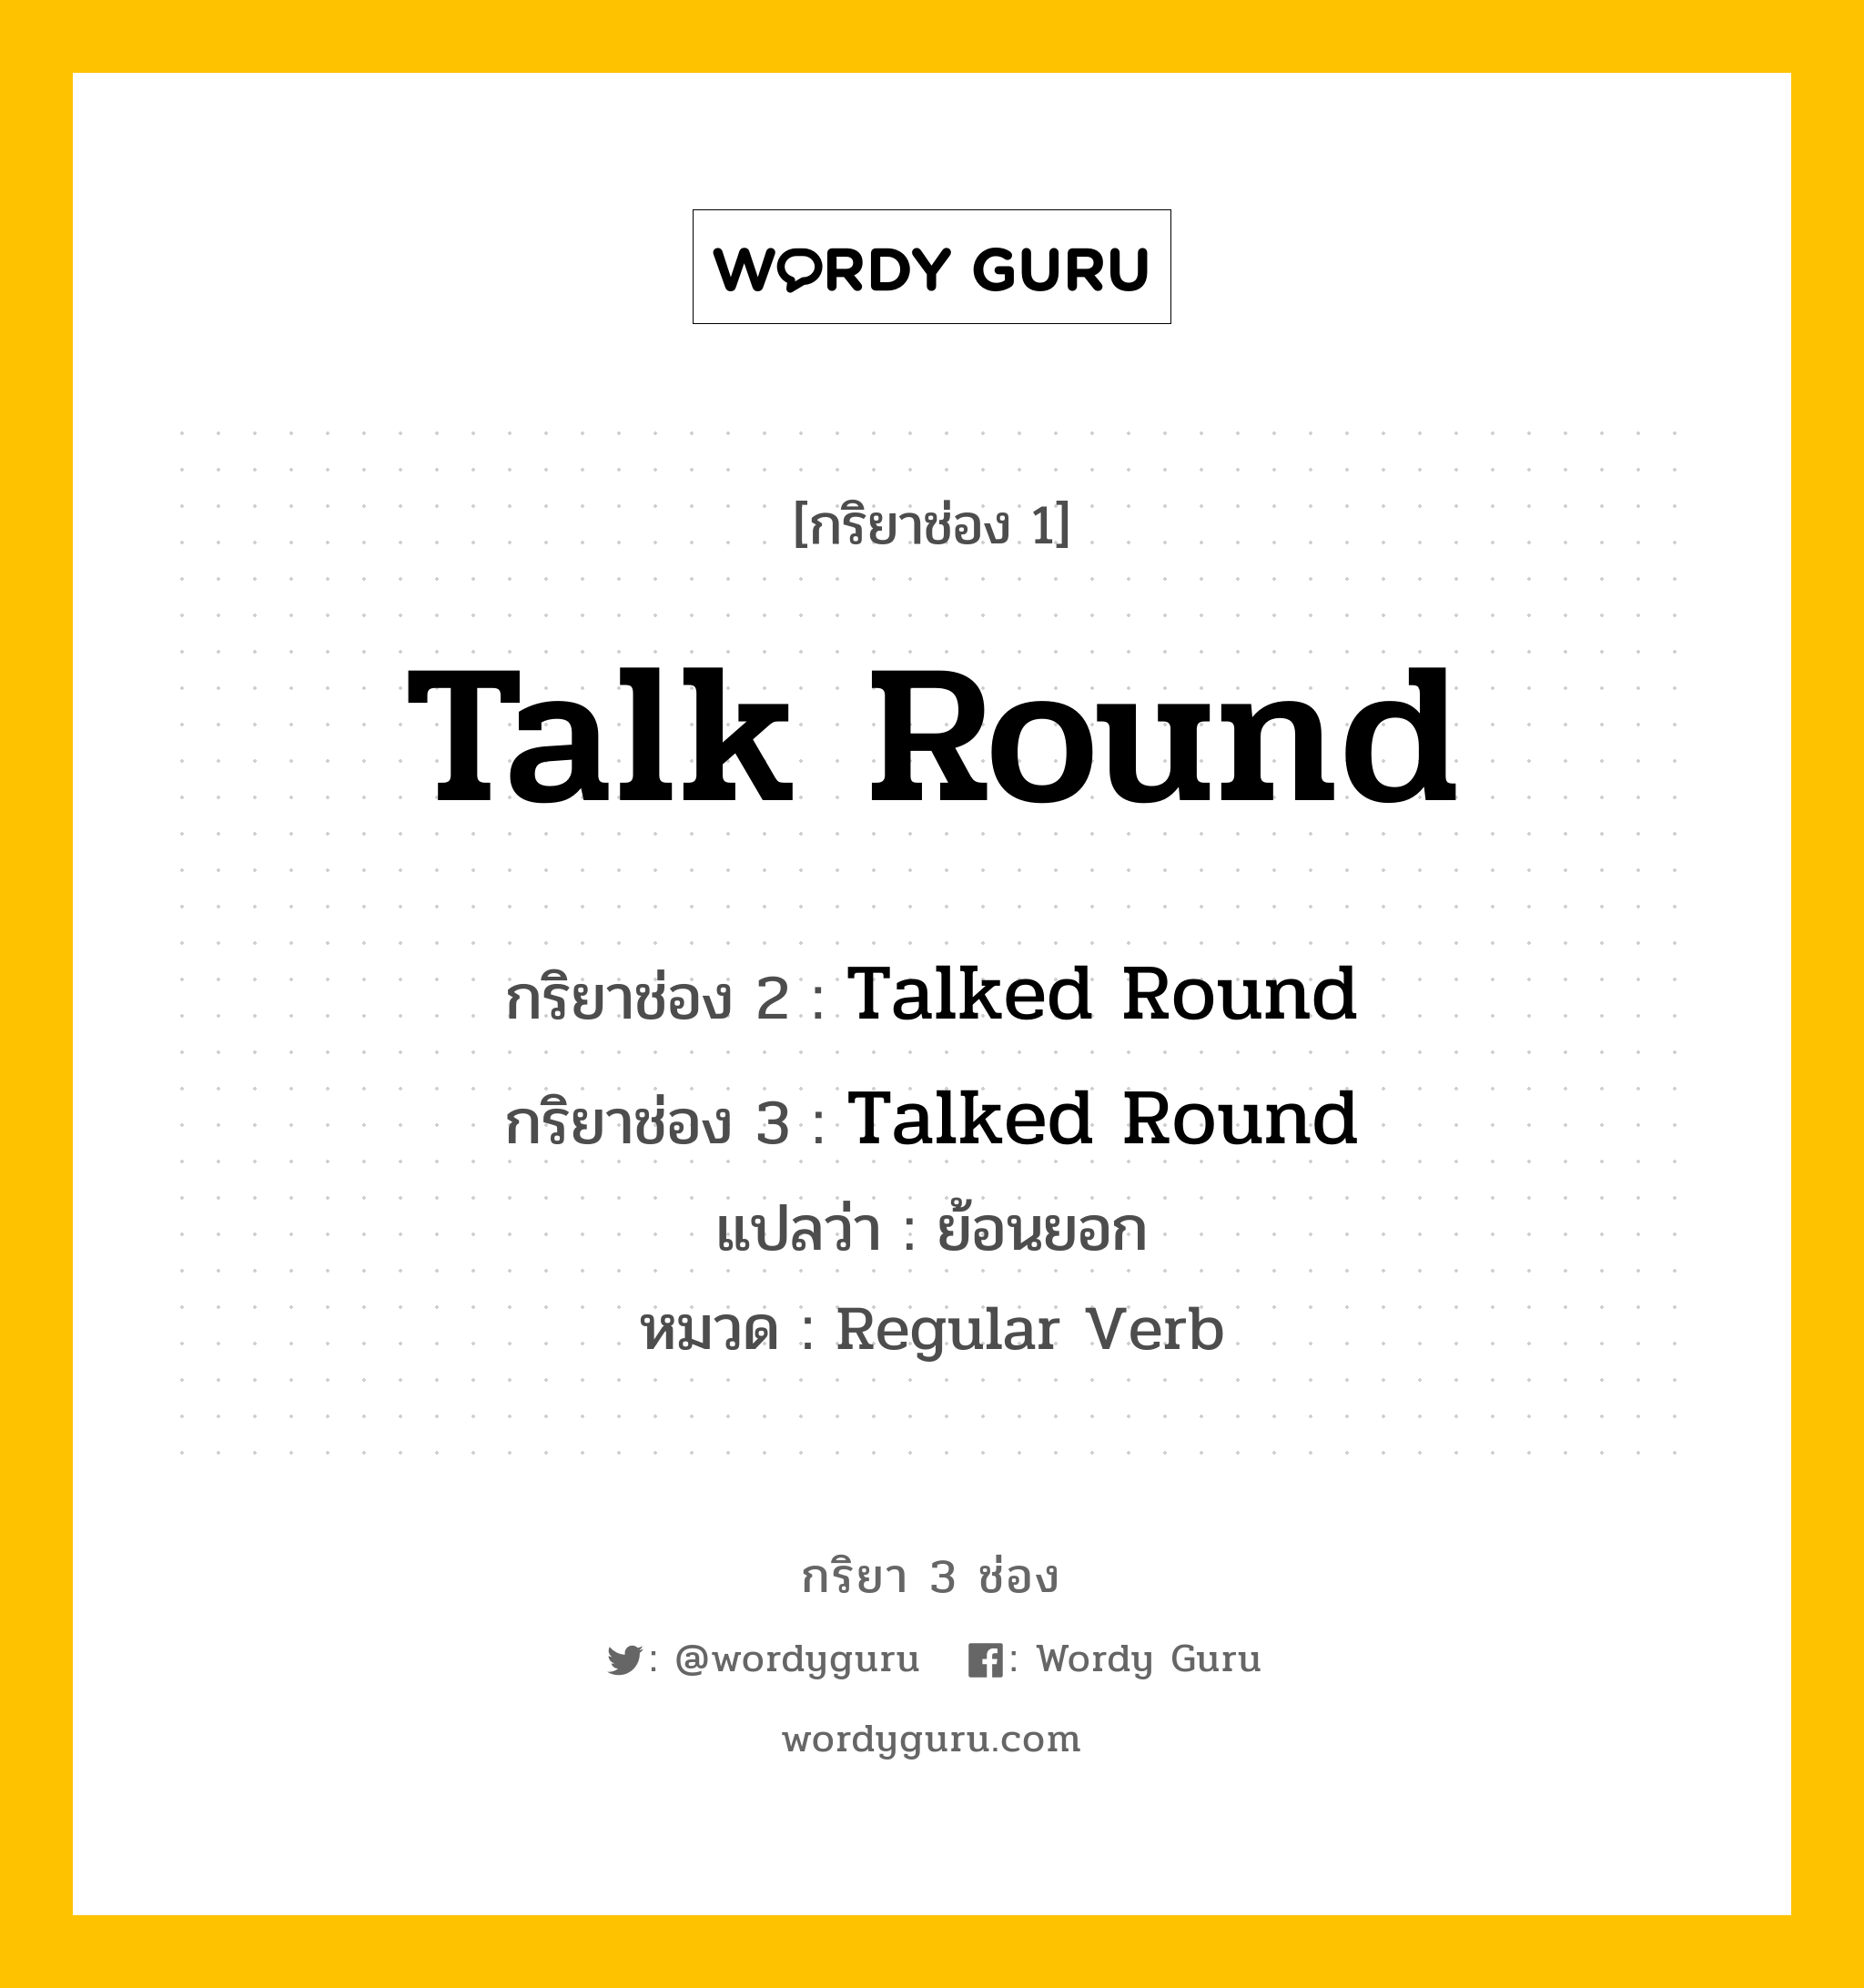 กริยา 3 ช่อง ของ Talk Round คืออะไร? มาดูคำอ่าน คำแปลกันเลย, กริยาช่อง 1 Talk Round กริยาช่อง 2 Talked Round กริยาช่อง 3 Talked Round แปลว่า ย้อนยอก หมวด Regular Verb หมวด Regular Verb